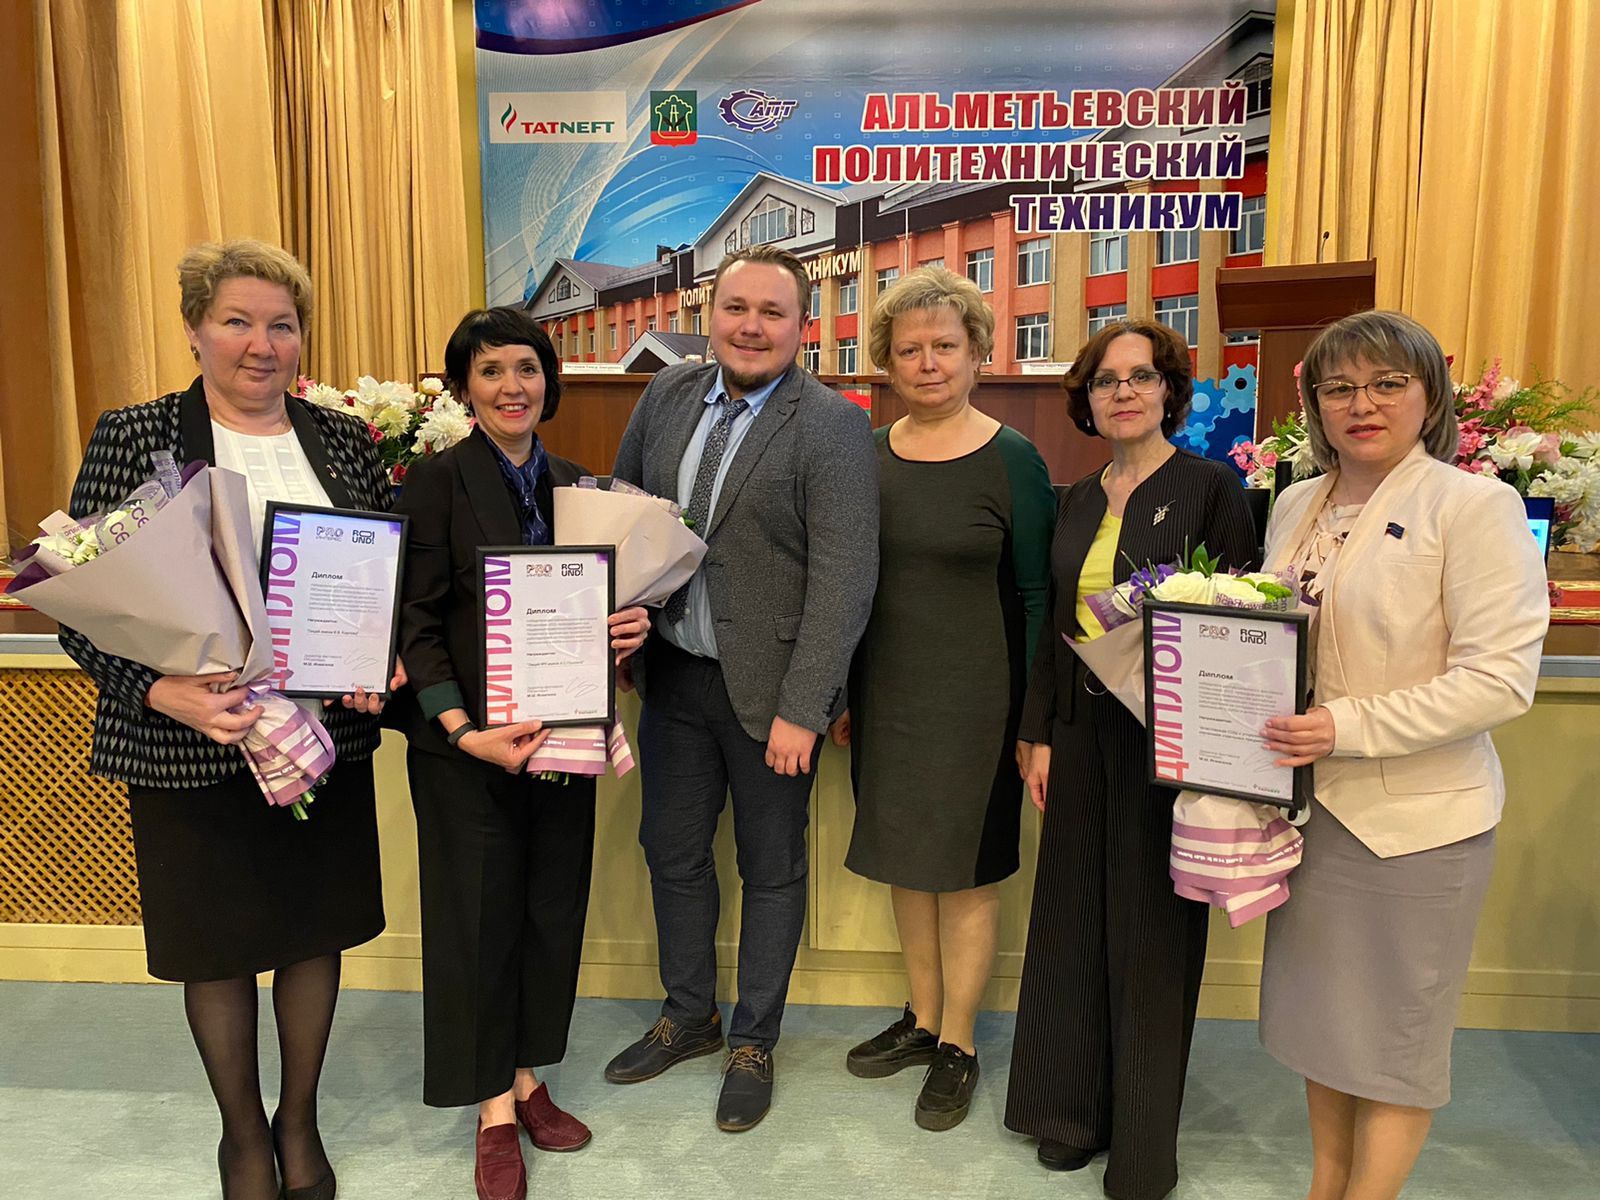 Апастовская средняя общеобразовательная школа победила в фестивале PROинтерес- 2022